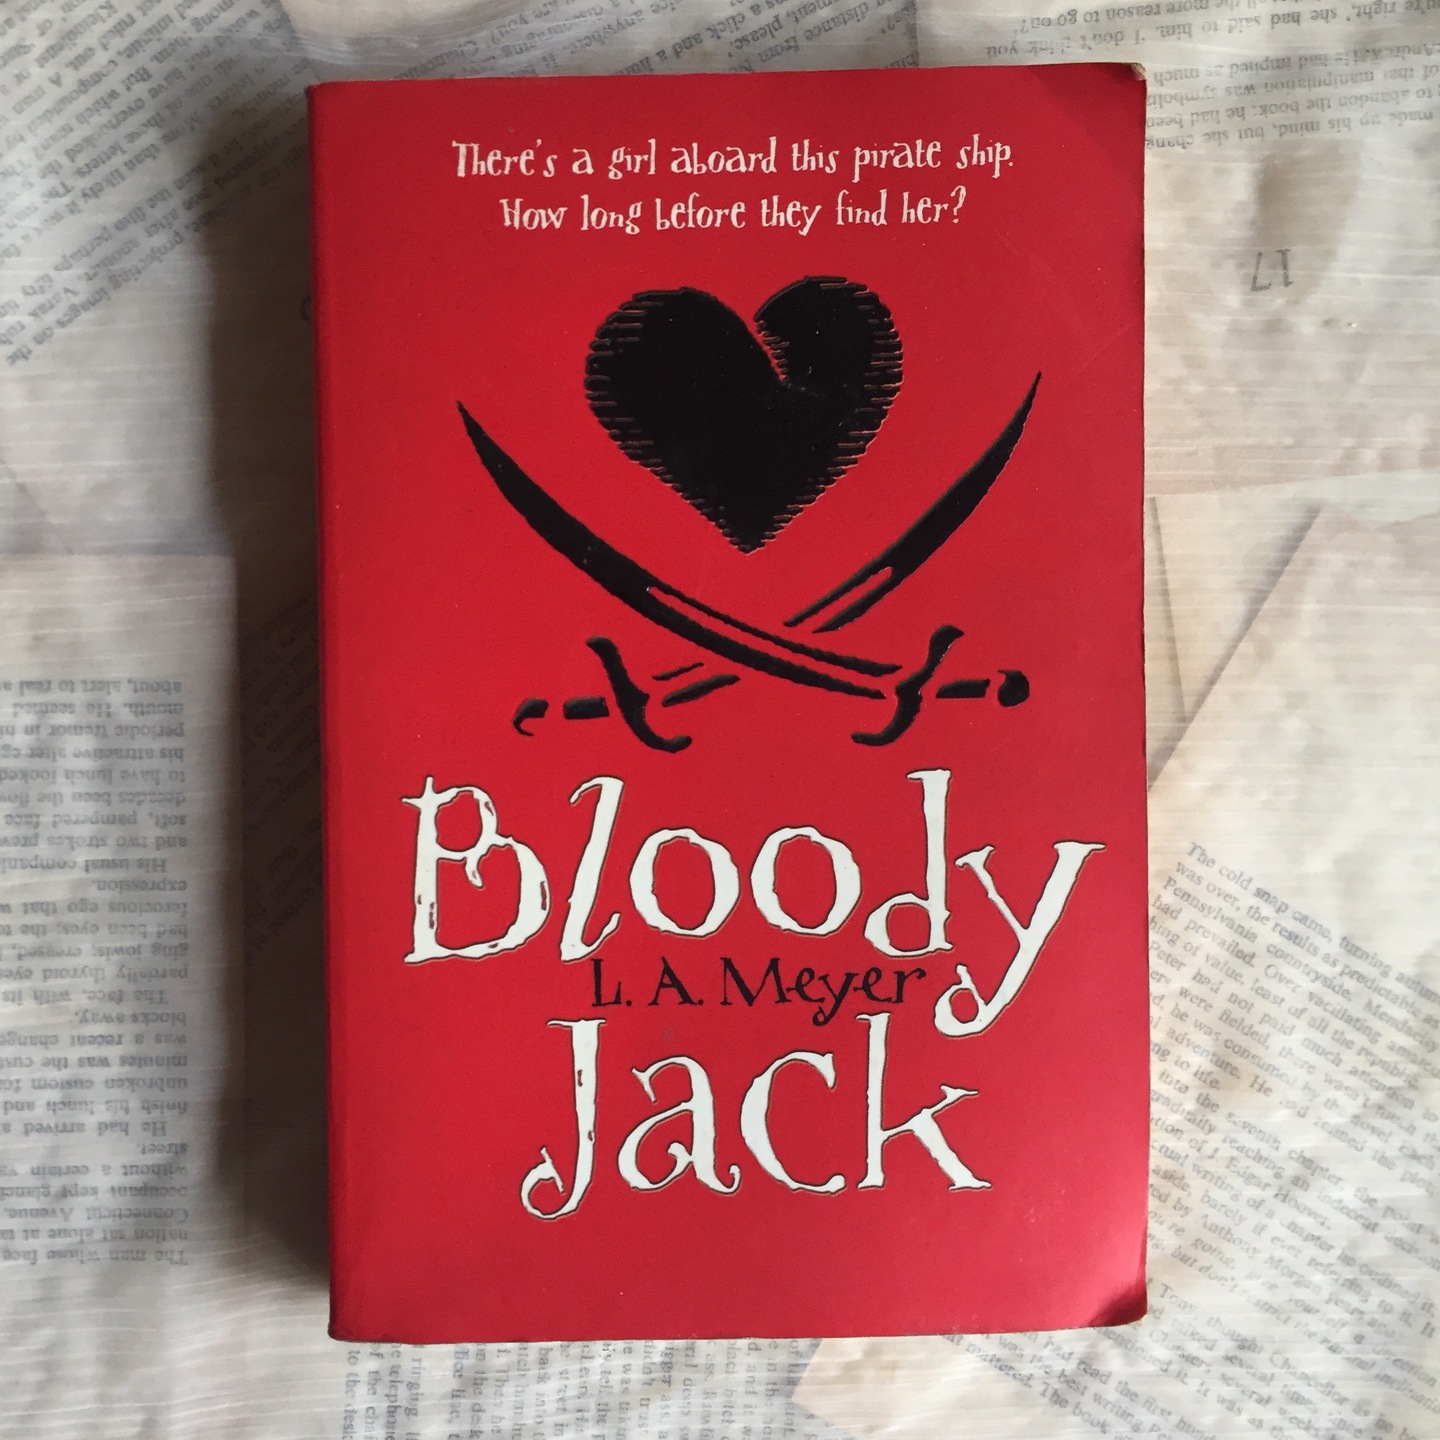 Bloody Jack by L.A. Meyer [Paperback]